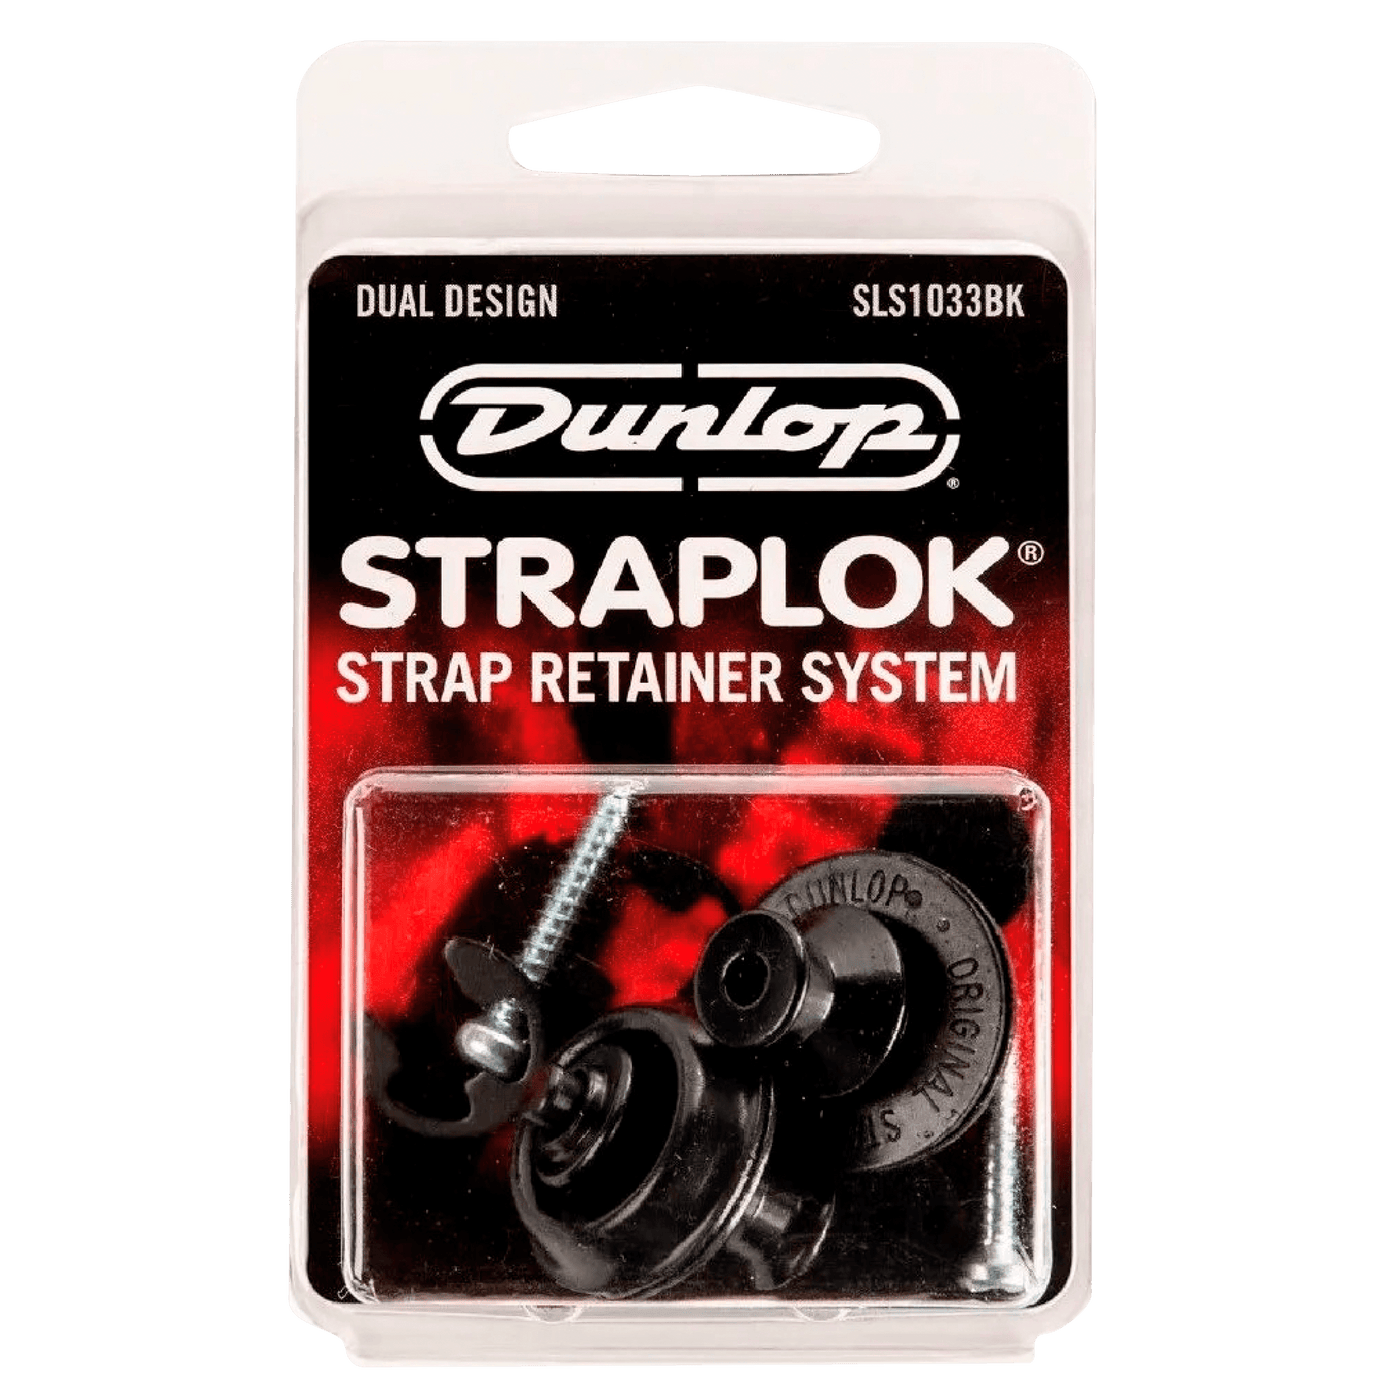 Dunlop Straplok® Black - El retenedor de correa (Strap Lock) Dunlop Straplok System Dual Design Nickel utiliza un diseño de ranura y bola de 360 ​​grados para permitir la libertad de movimiento de su correa, sin temor a que se enganche o se suelte. Con el